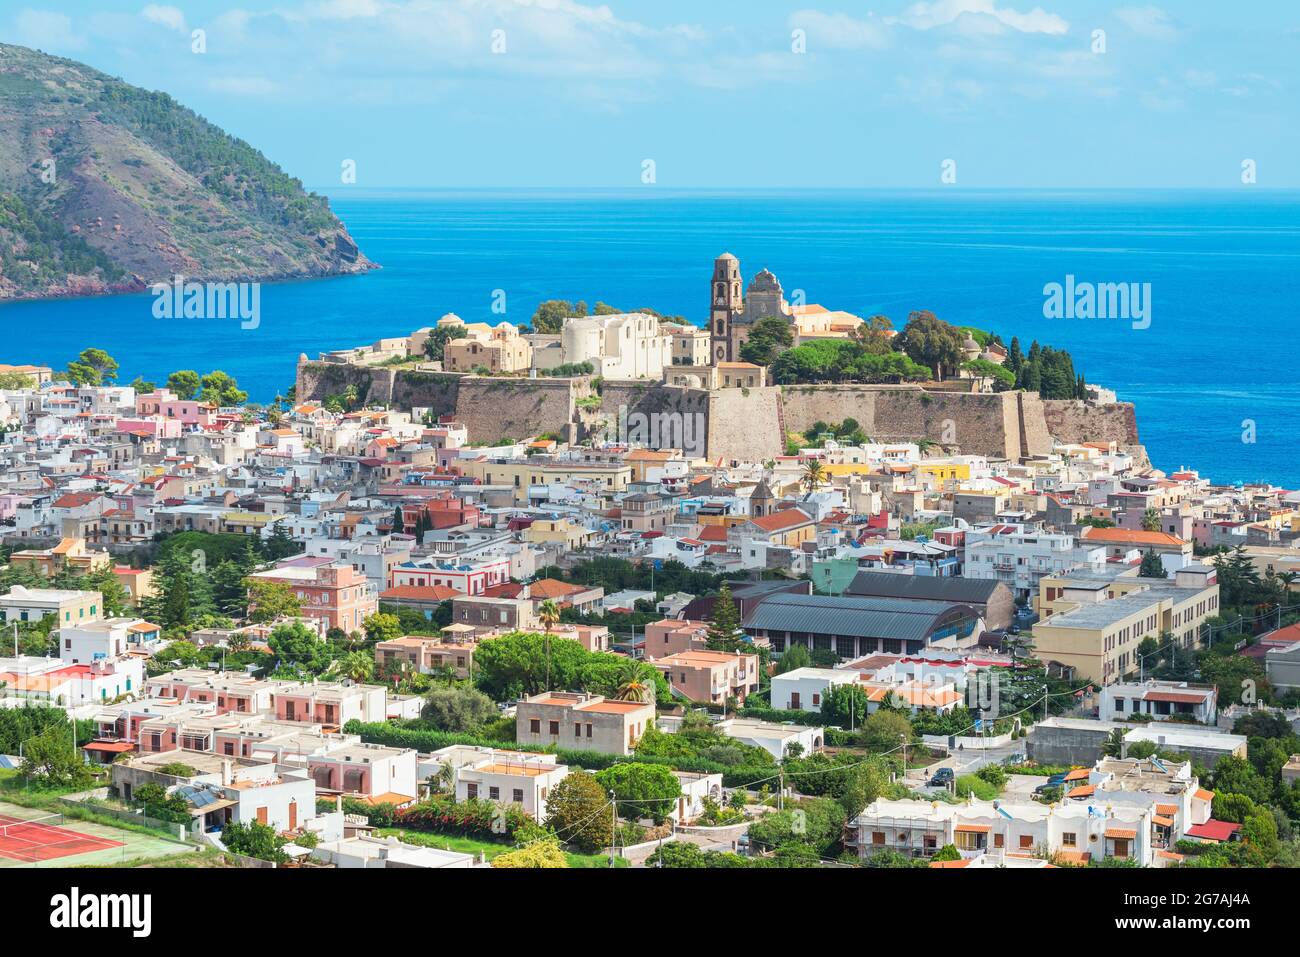 Ville de Lipari, vue en hauteur, île de Lipari, Iles Eoliennes Sicile, Italie Banque D'Images